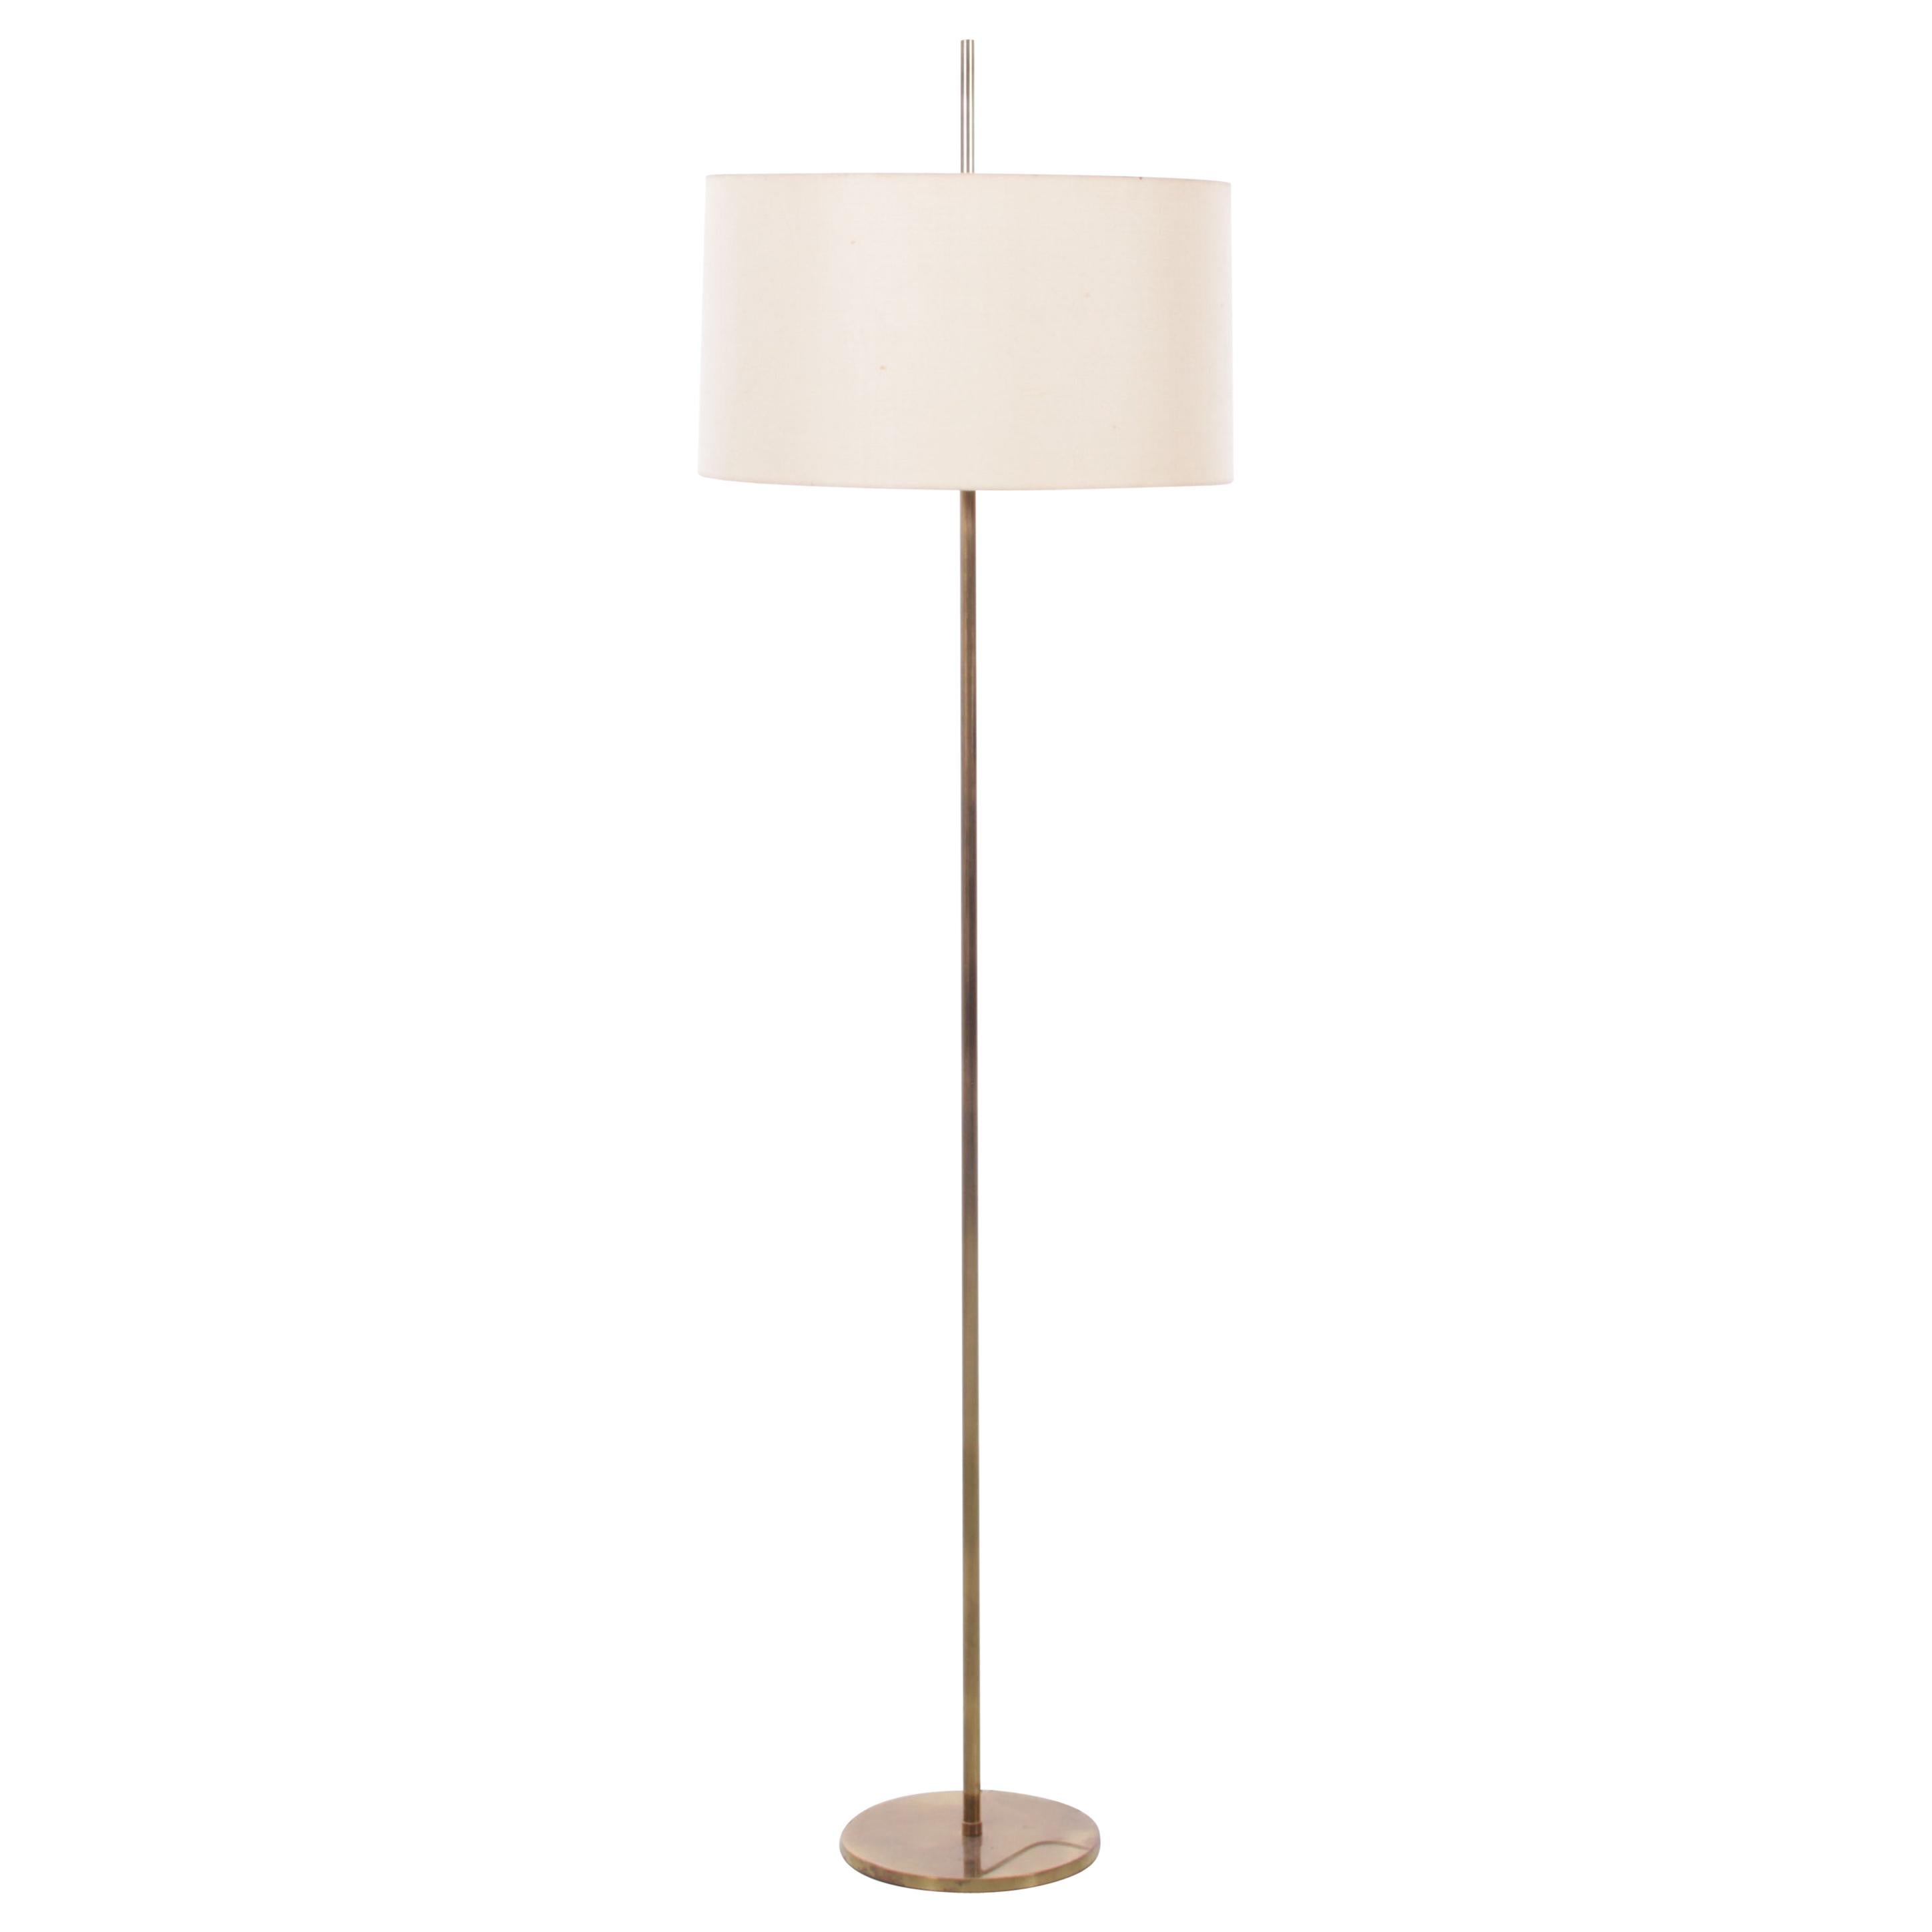 Mid-Century Modern Scandinavian Floor Lamp in Brass